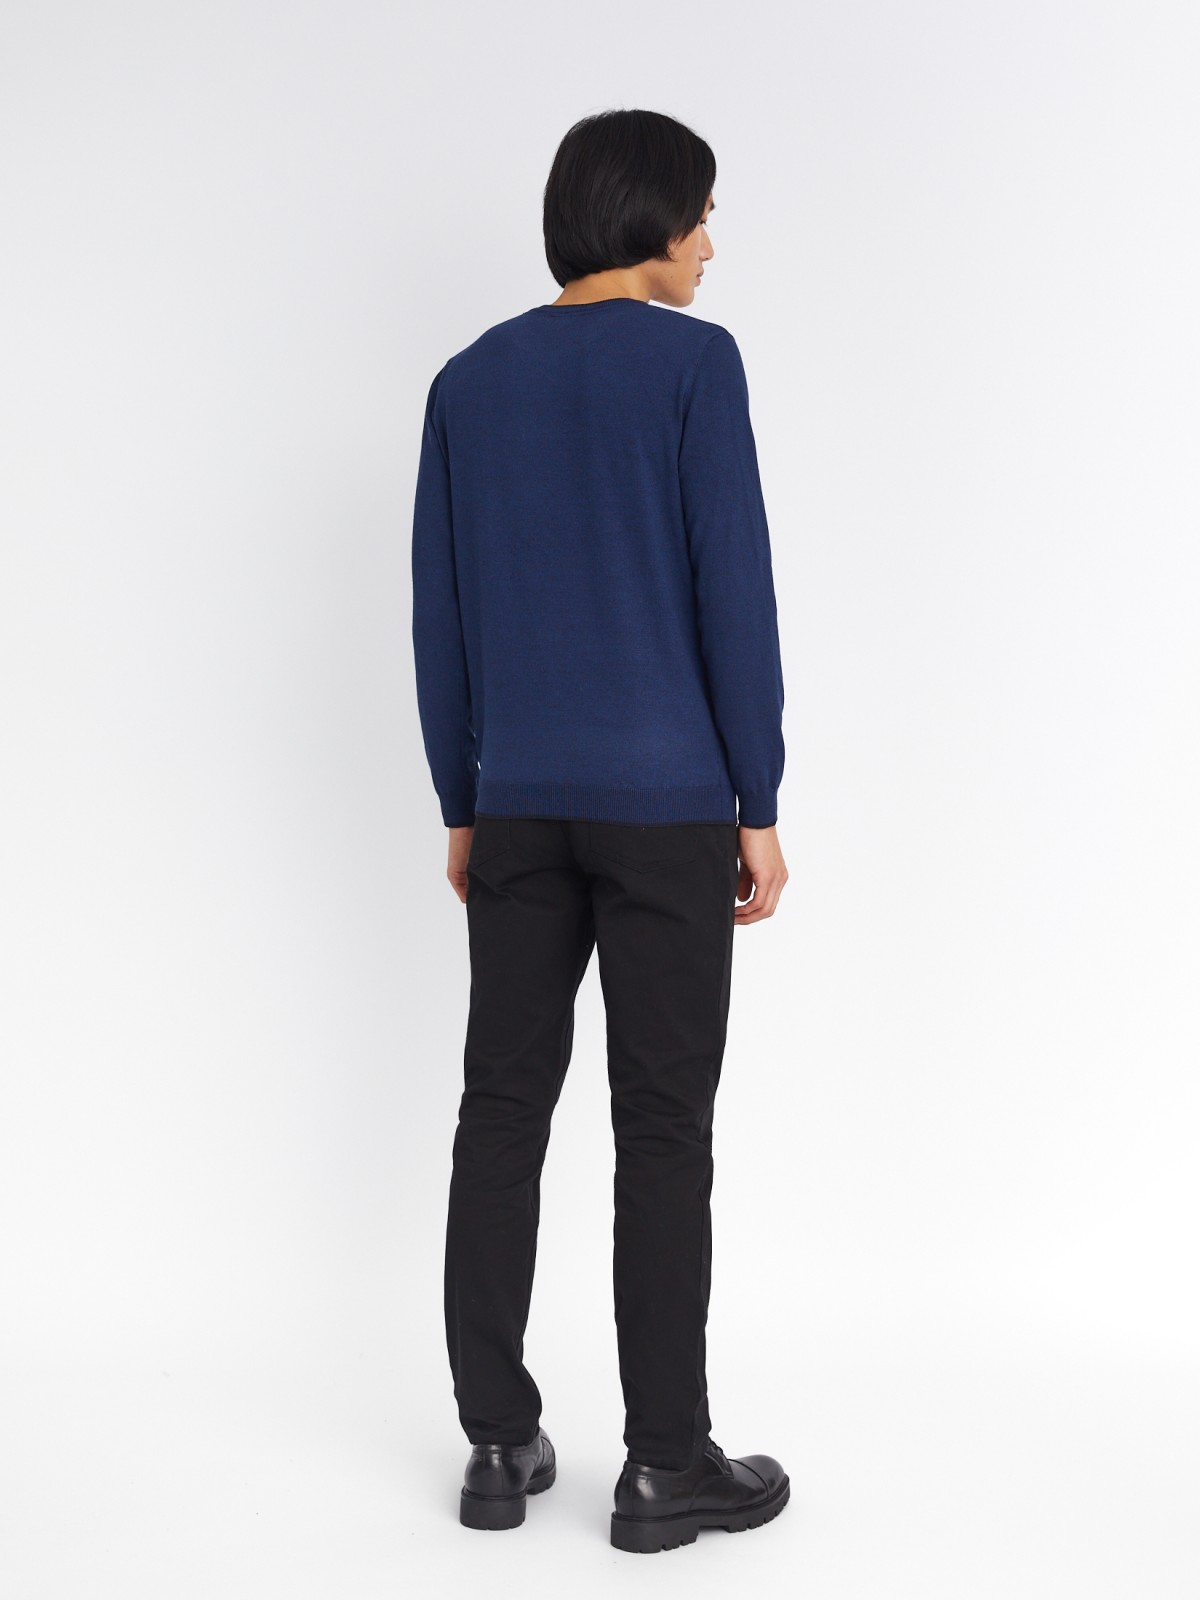 Тонкий трикотажный пуловер с треугольным вырезом и длинным рукавом zolla 213336165022, цвет синий, размер M - фото 6